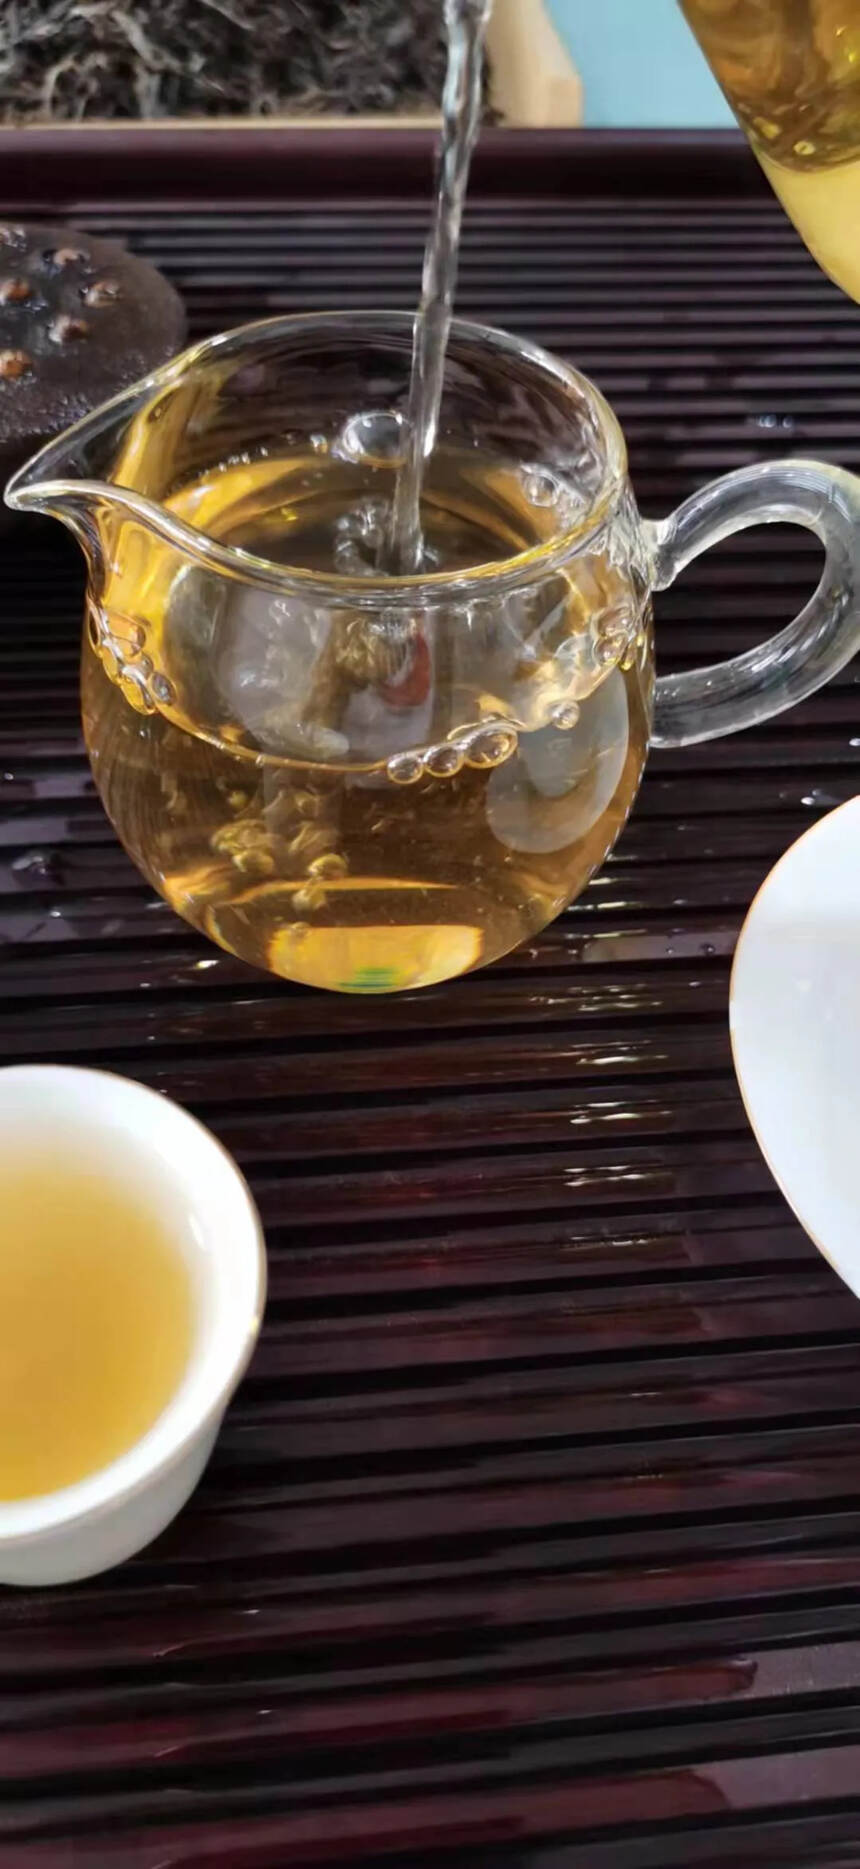 2017年拔玛古树春茶。#普洱茶# #茶生活# #普